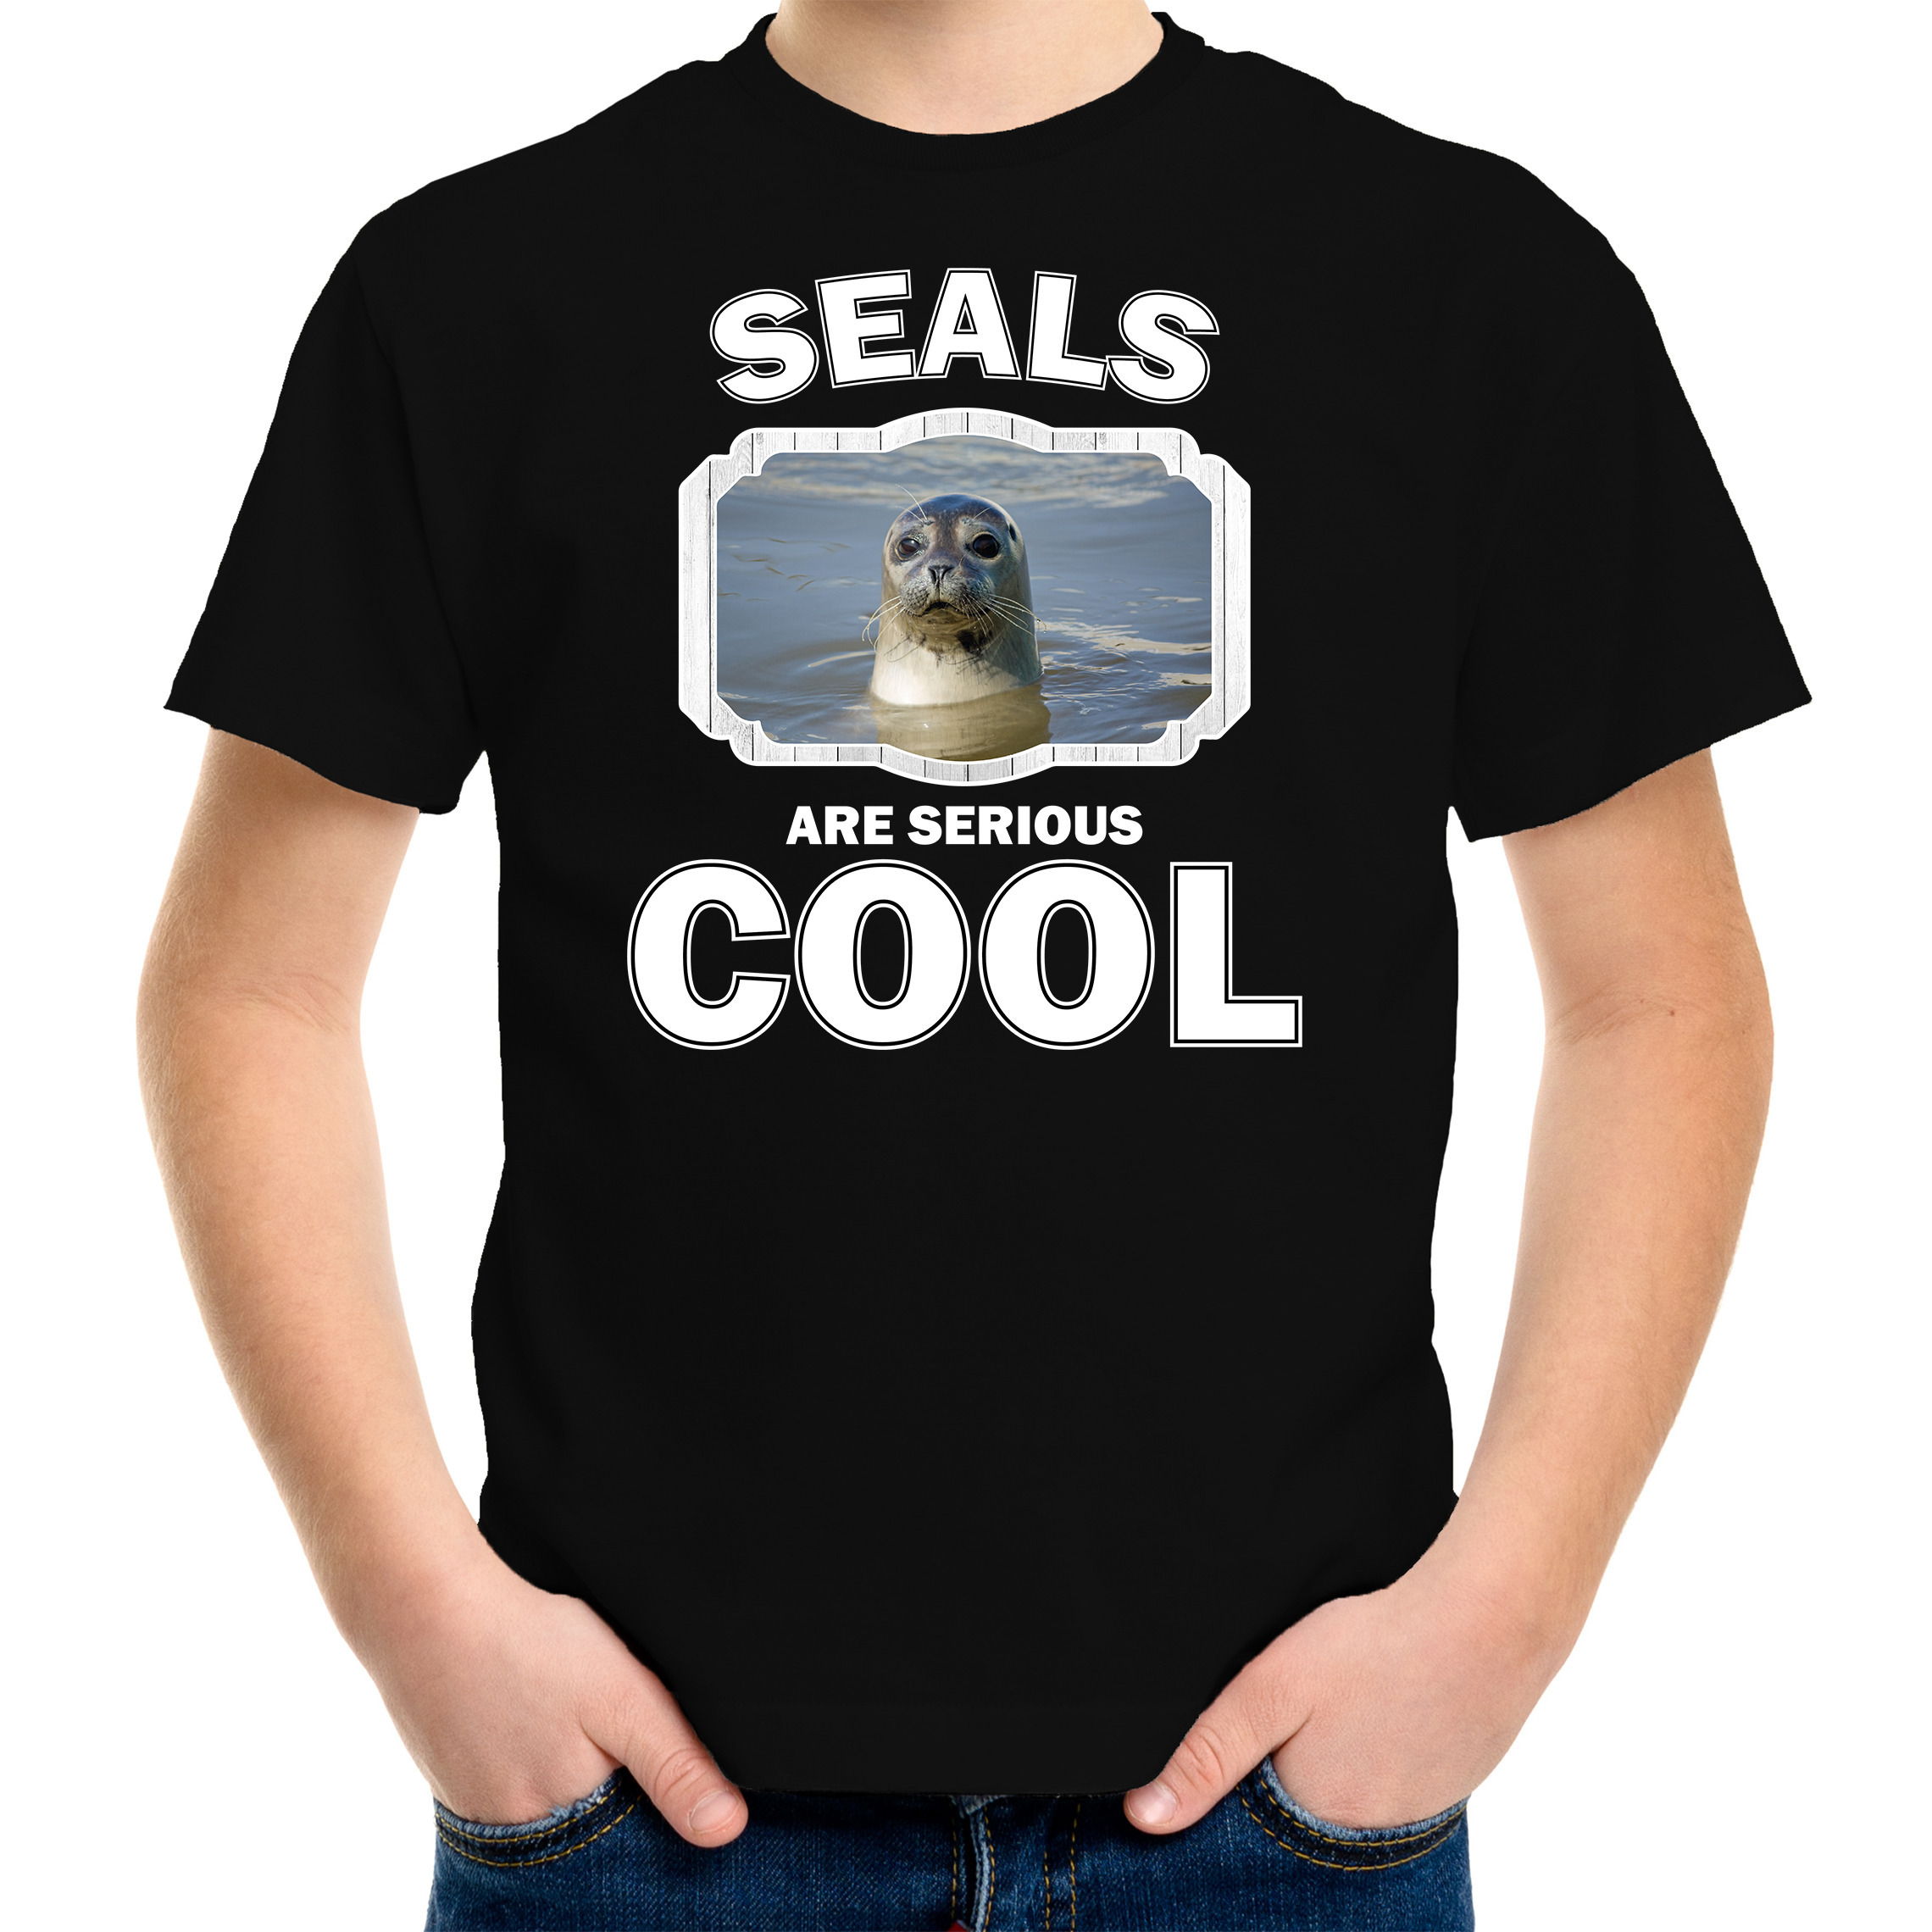 Dieren grijze zeehond t-shirt zwart kinderen seals are cool shirt jongens en meisjes